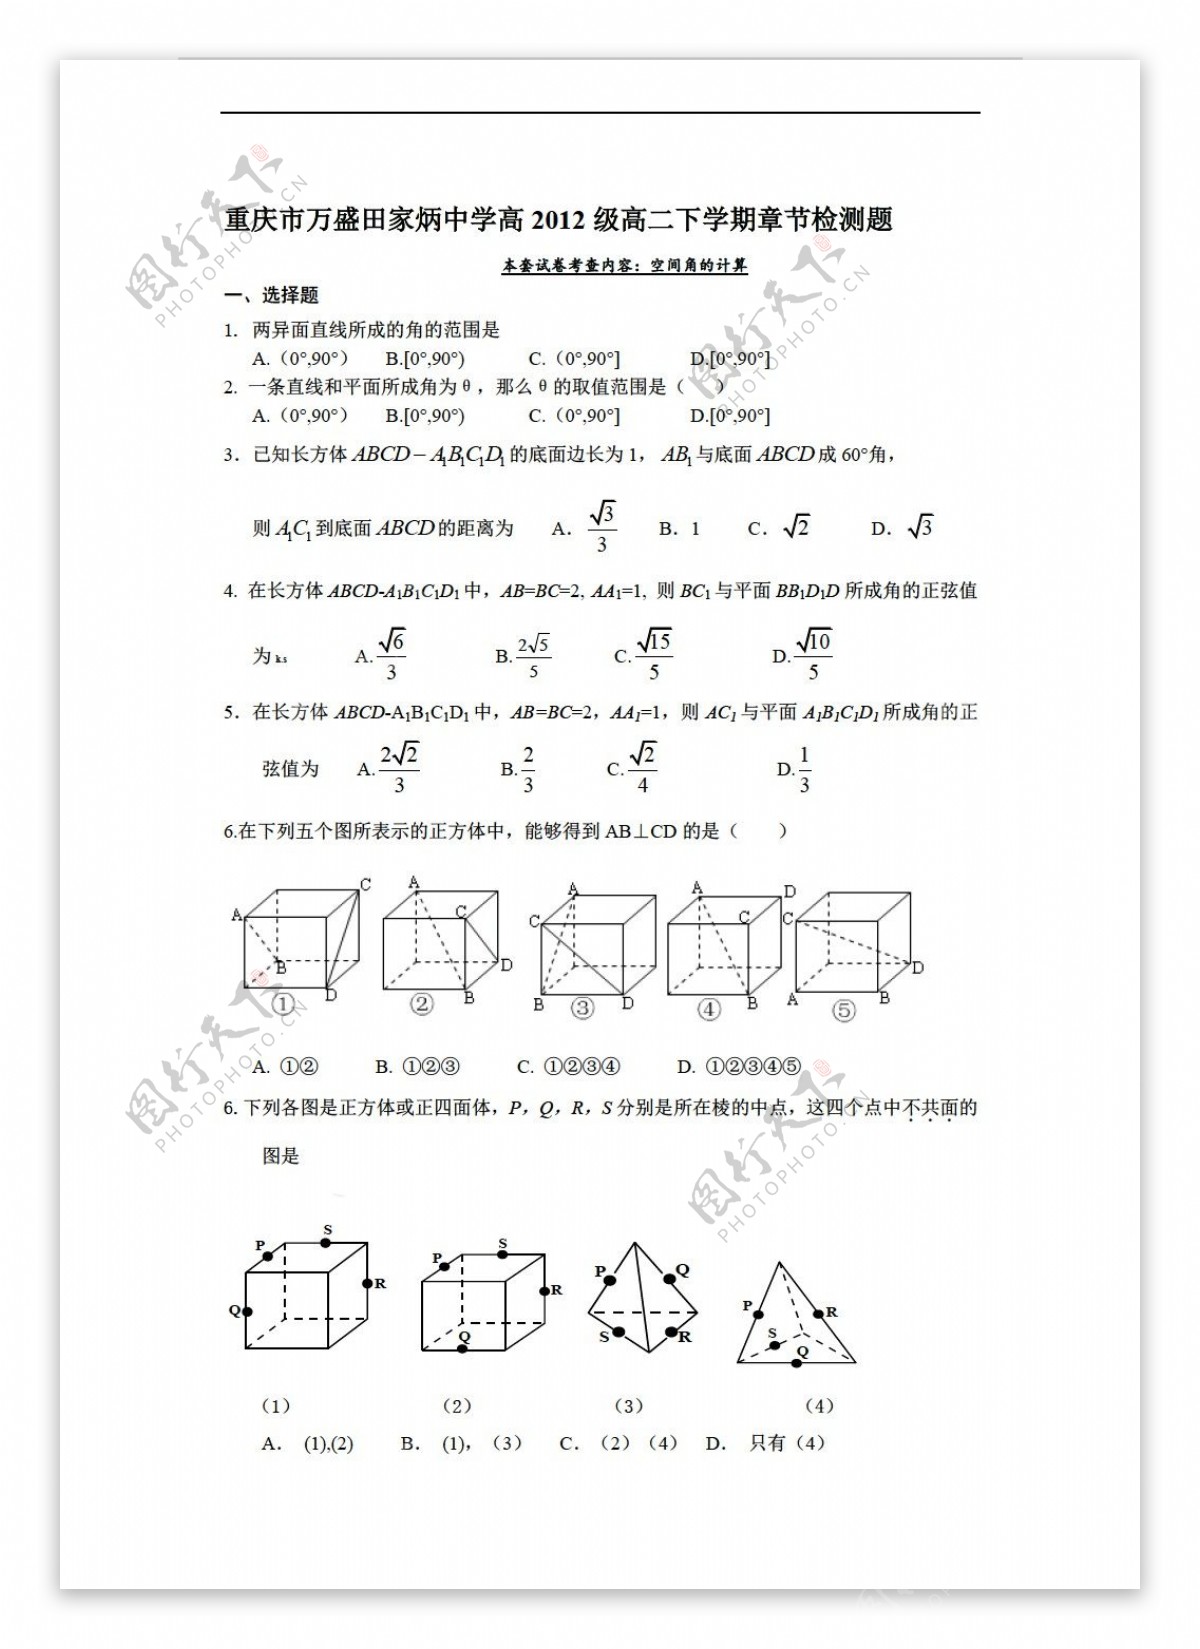 数学人教版重庆市万盛田家炳中学高2012级下学期章节检测题空间角的计算